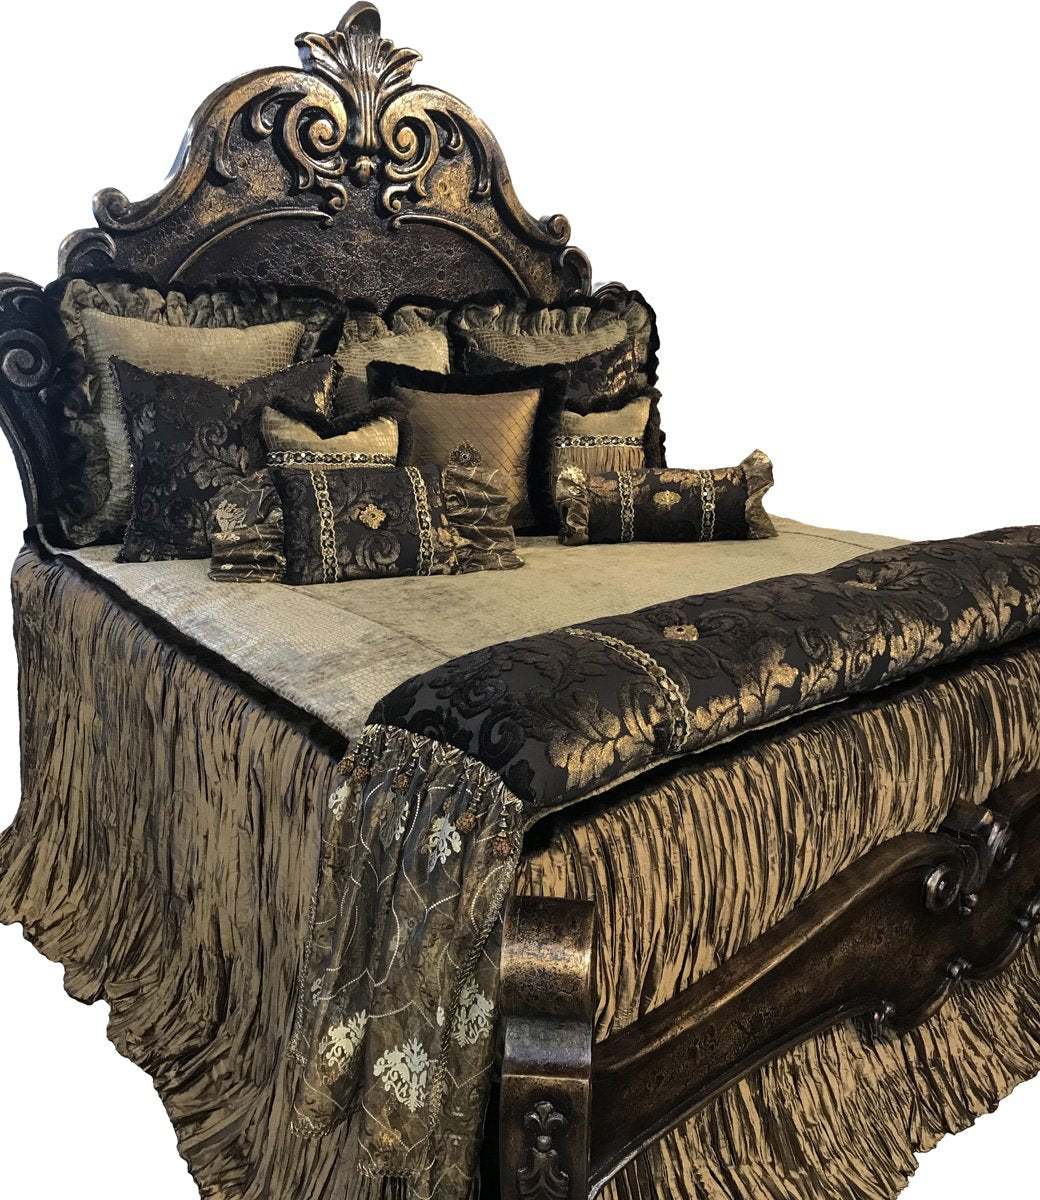 comforter sets king (Luxury). Beautiful